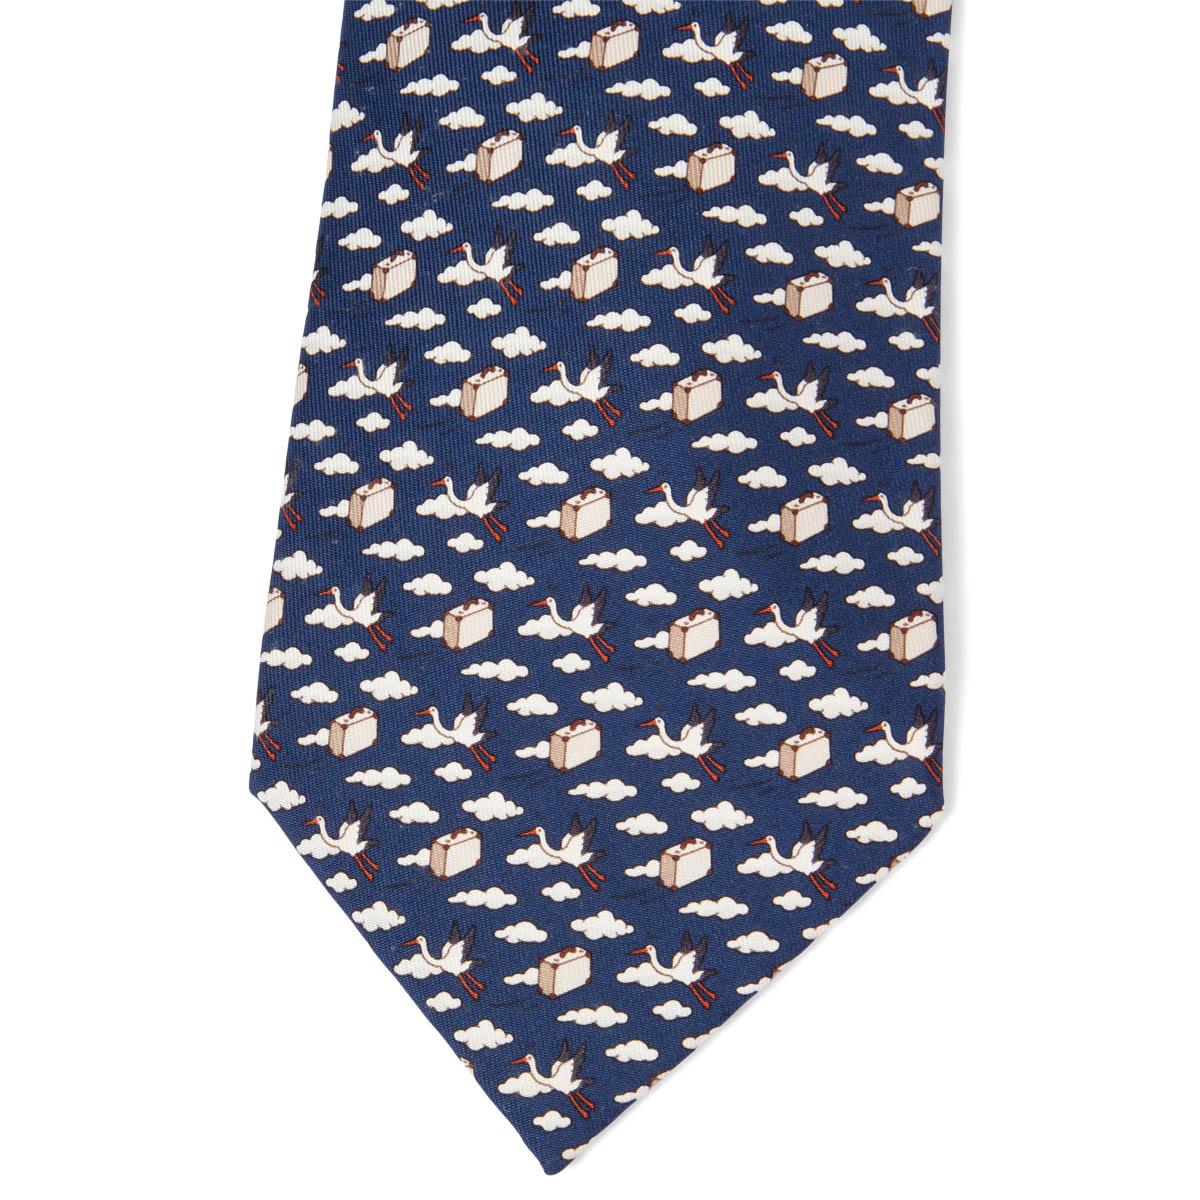 100% authentiques cravates Hermès Bird Express en twill de soie bleu foncé, beige et rouge (100%). A été porté et est en excellent état. Pas de boîte.

Mesures
Modèle	5454
Longueur	156cm (60.8in)
Point le plus large	9cm (3.54in)

Toutes nos annonces